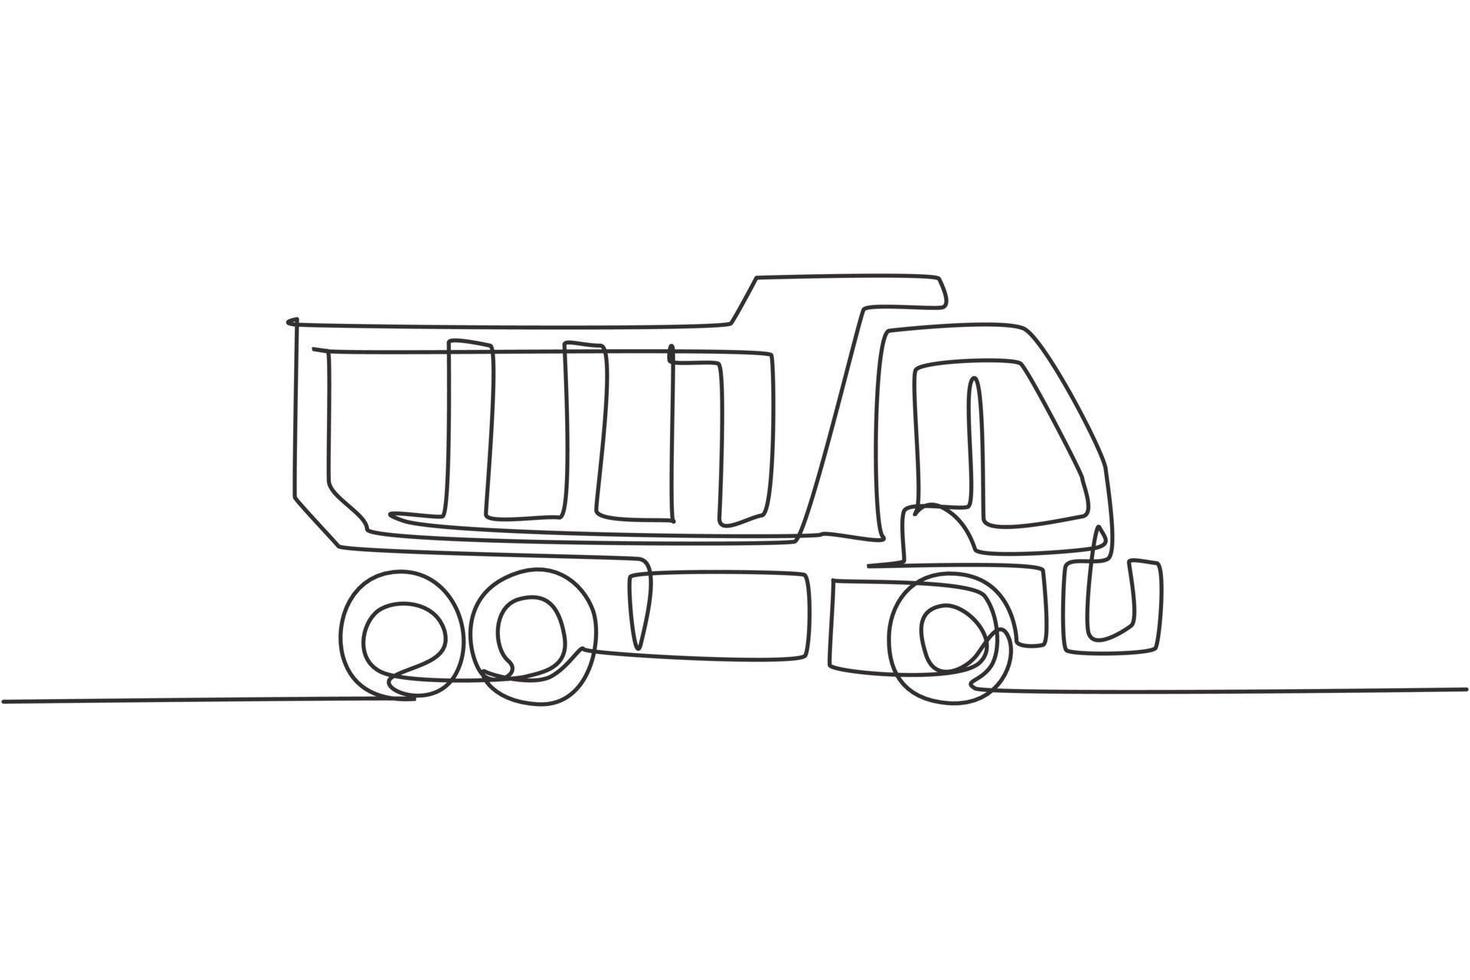 een doorlopende lijntekening van lange vrachtwagen voor logistieke levering van vracht, bedrijfsvoertuig. zwaar transport vrachtwagens apparatuur concept. dynamische enkele lijn tekenen ontwerp vector grafische afbeelding